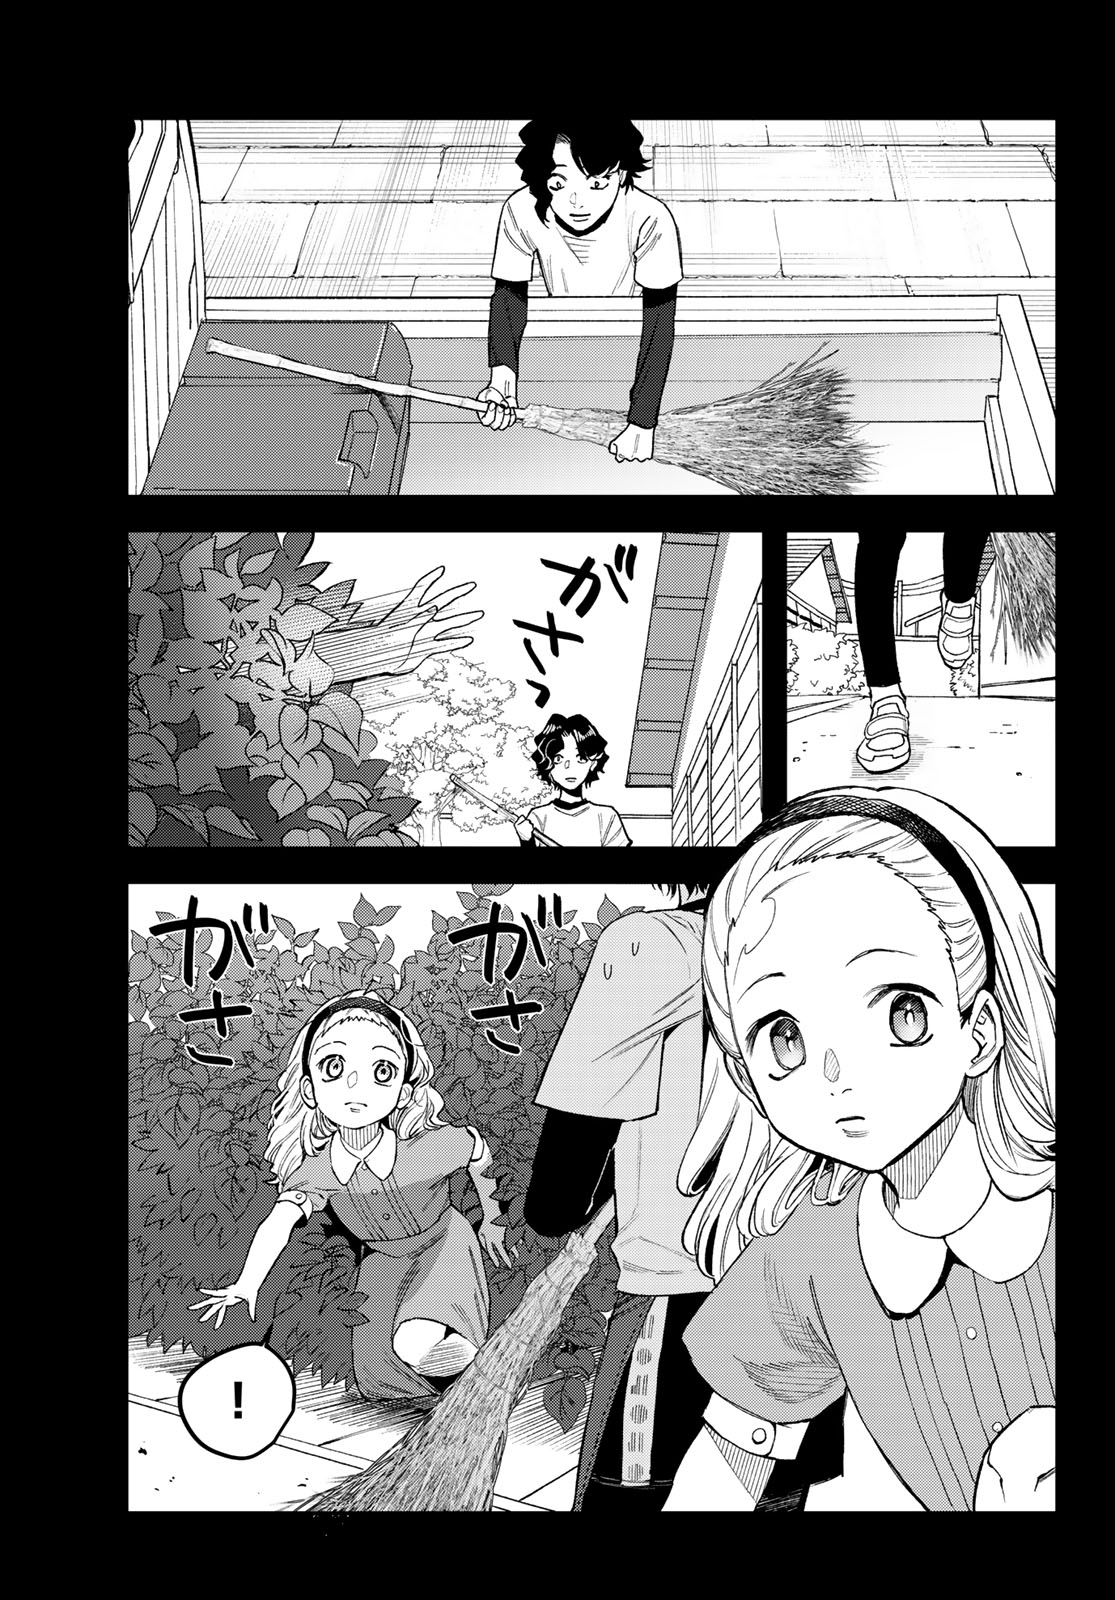 Bless (SONOYAMA Yukino) - Chapter 16 - Page 3